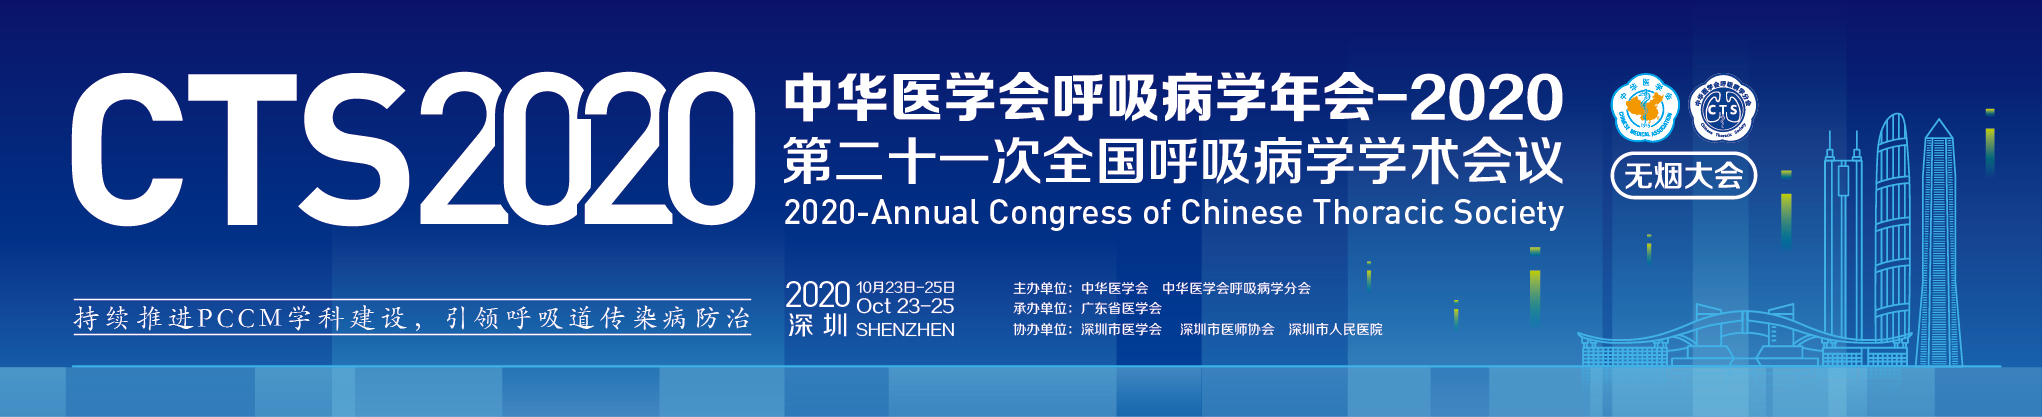 中华医学会呼吸病学年会-2020  (第二十一次全国呼吸病学学术会议)